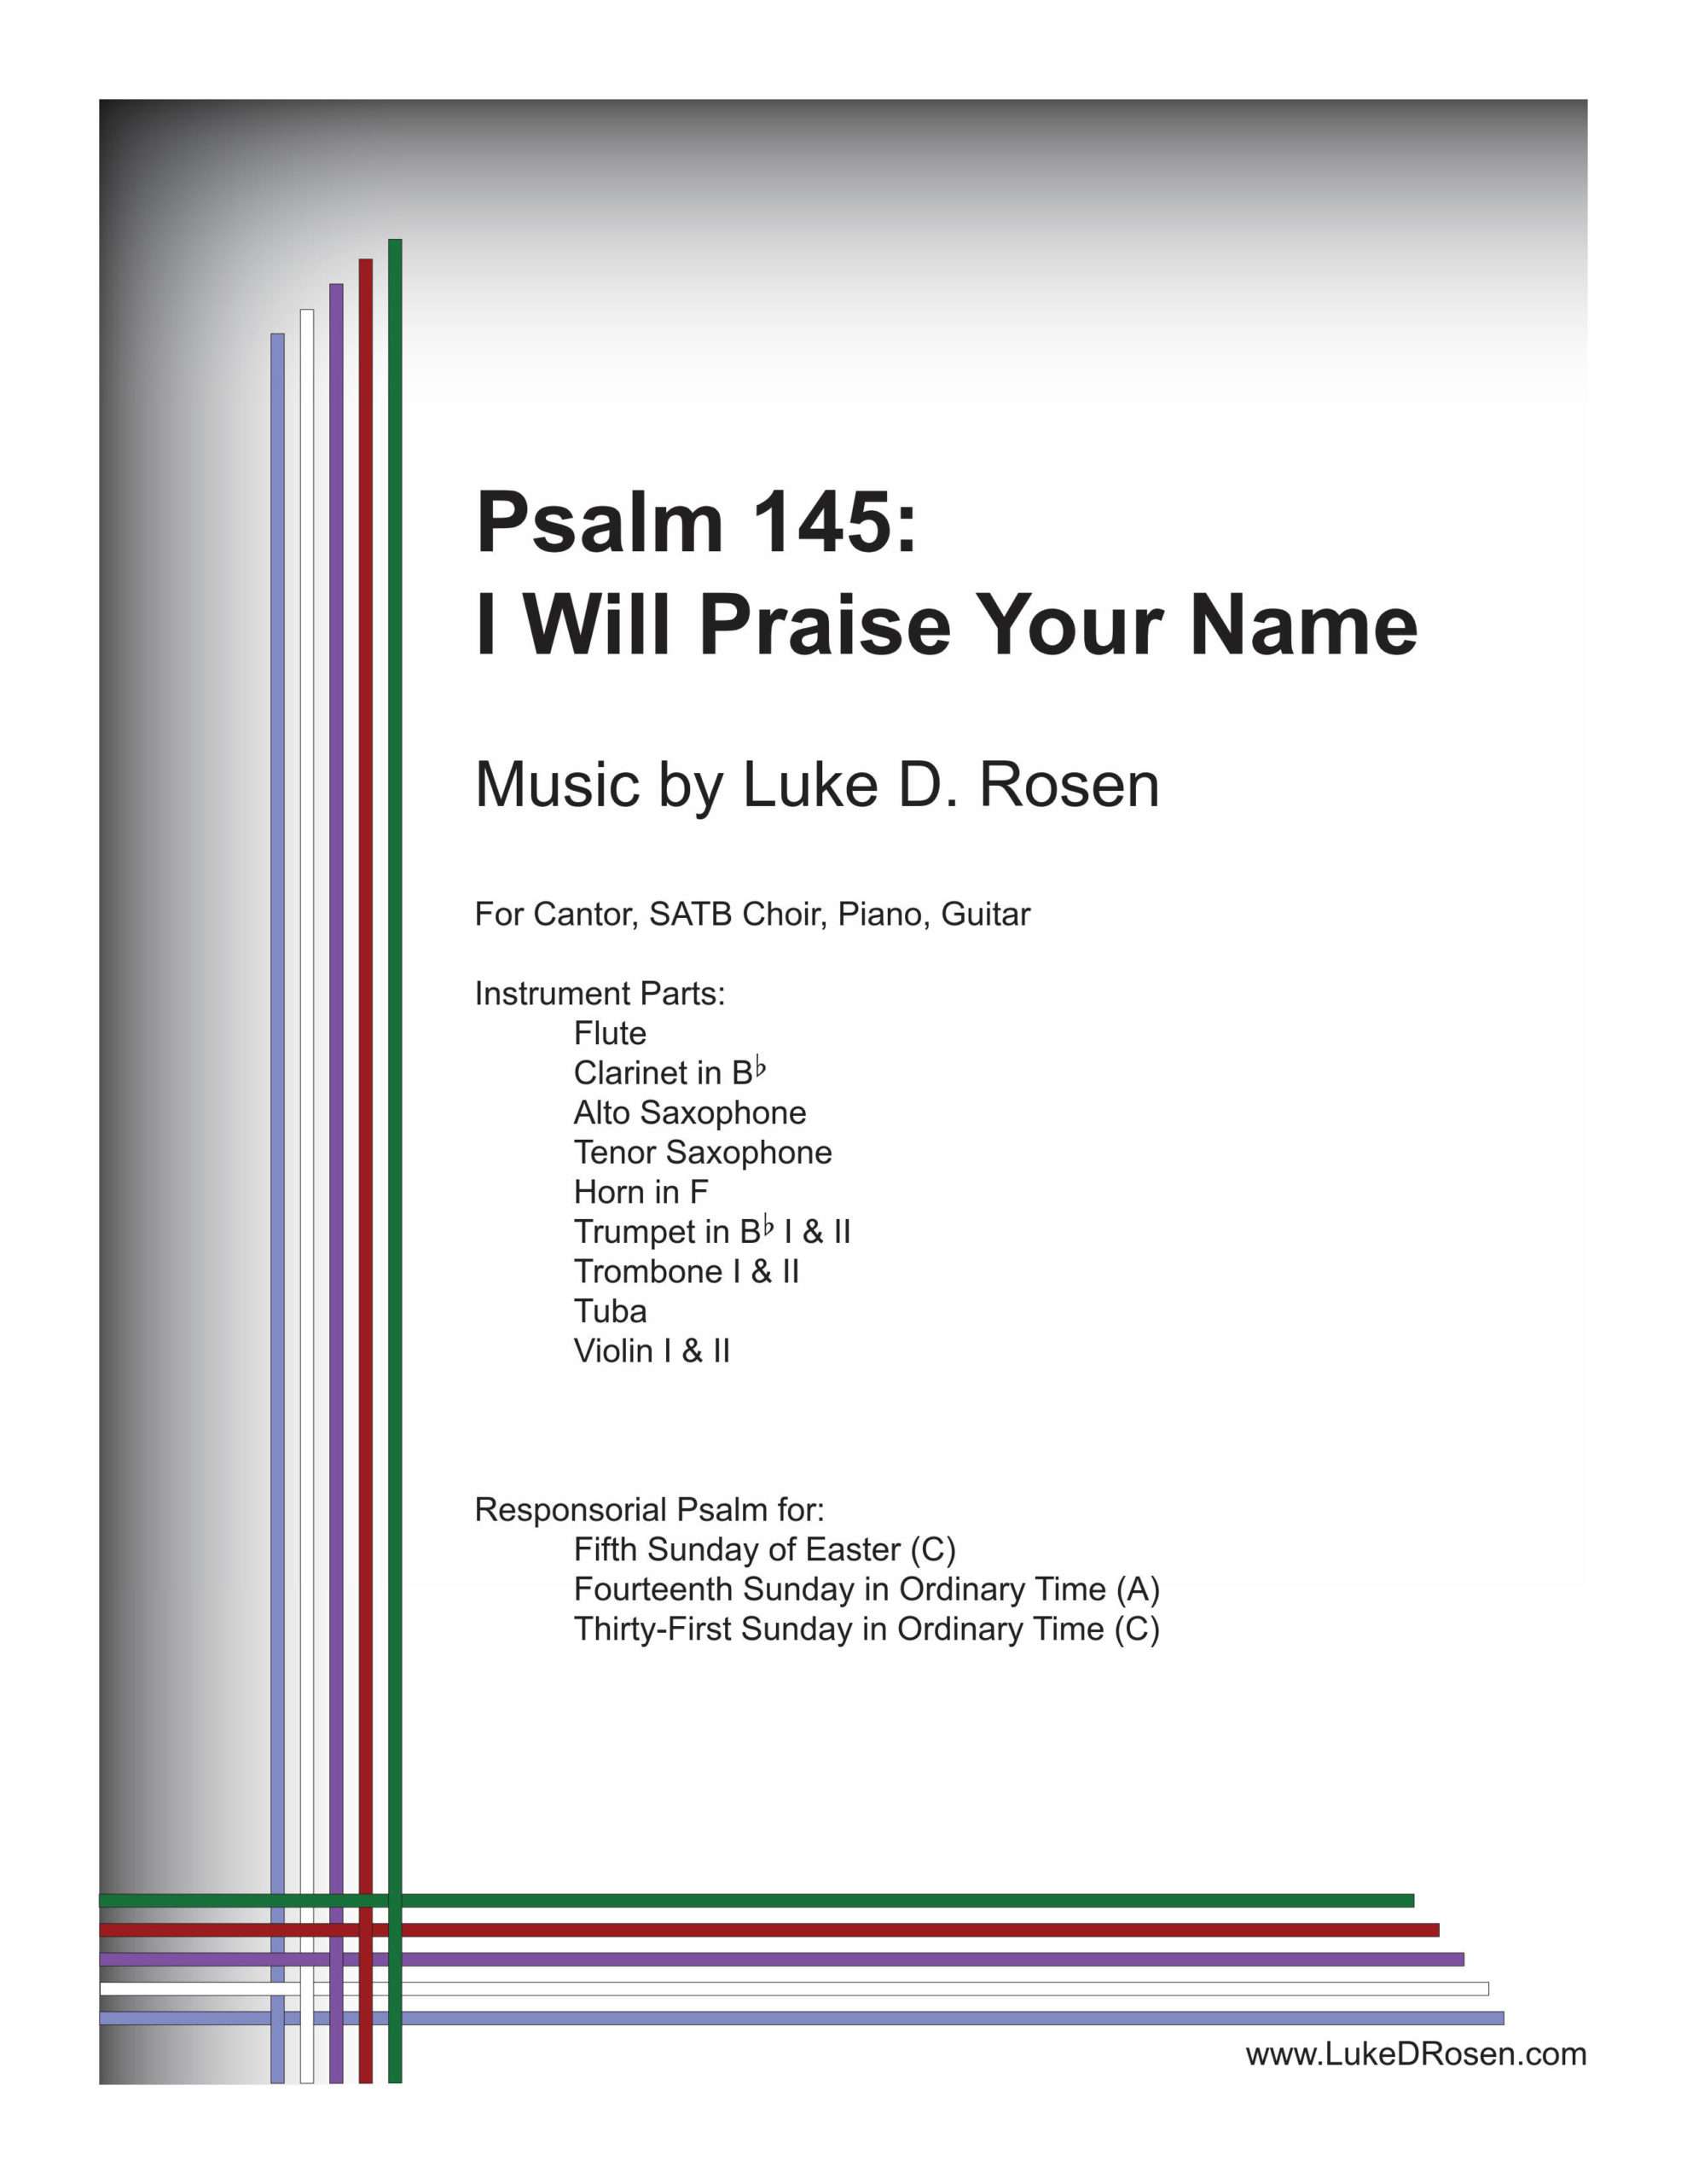 Psalm 145 – I Will Praise Your Name (Rosen)